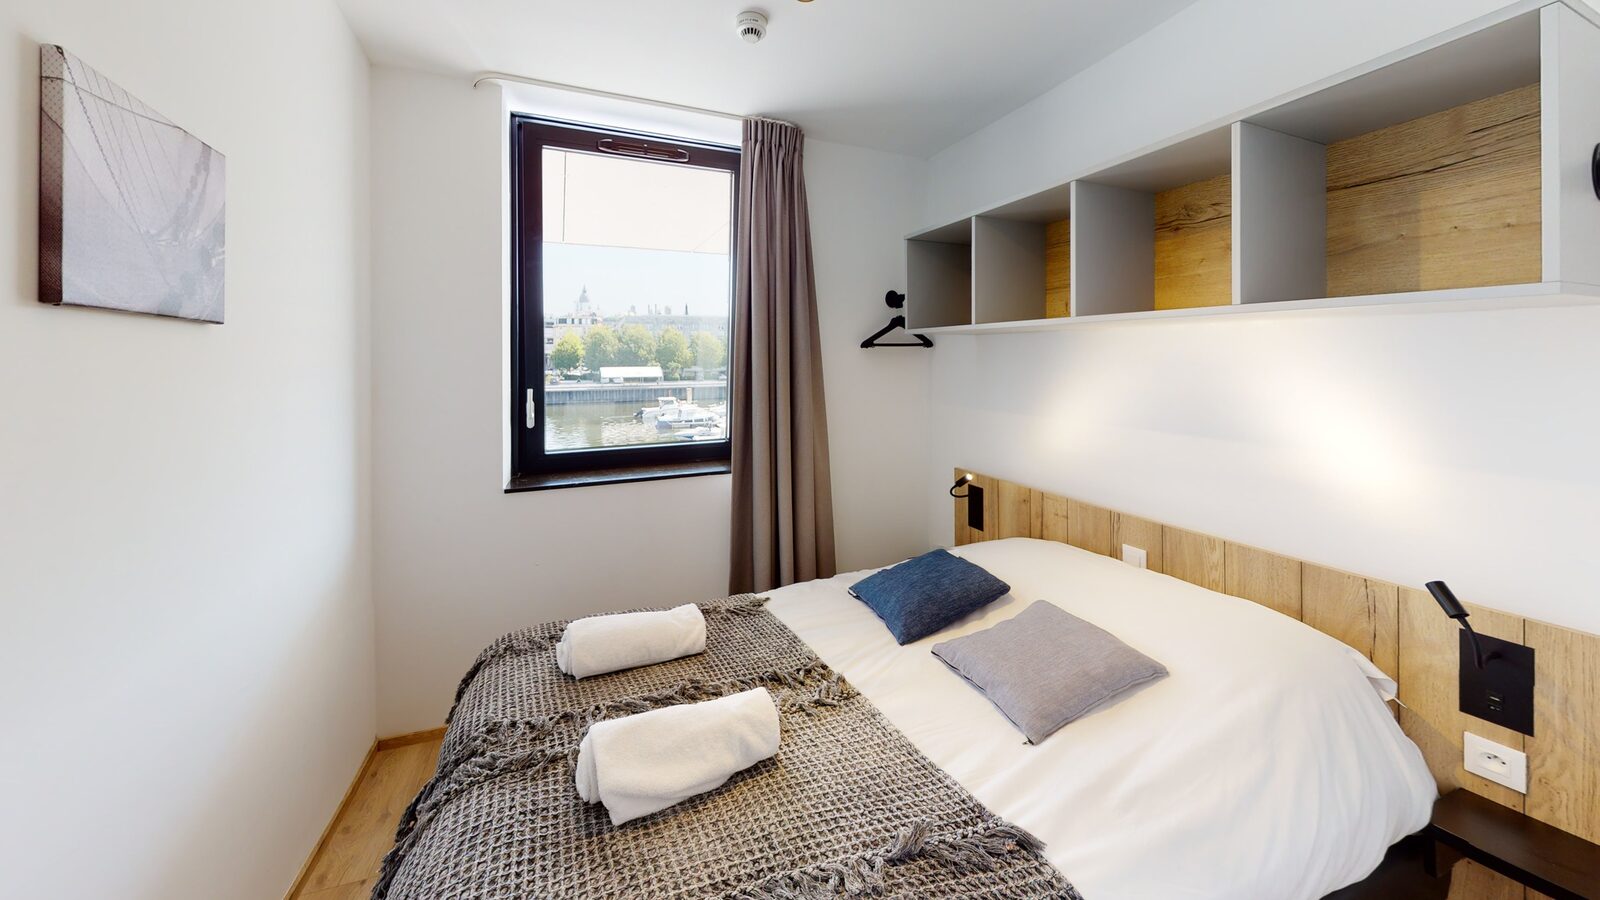 Standaard suite voor 4 pers met kamer met tweepersoonsbed